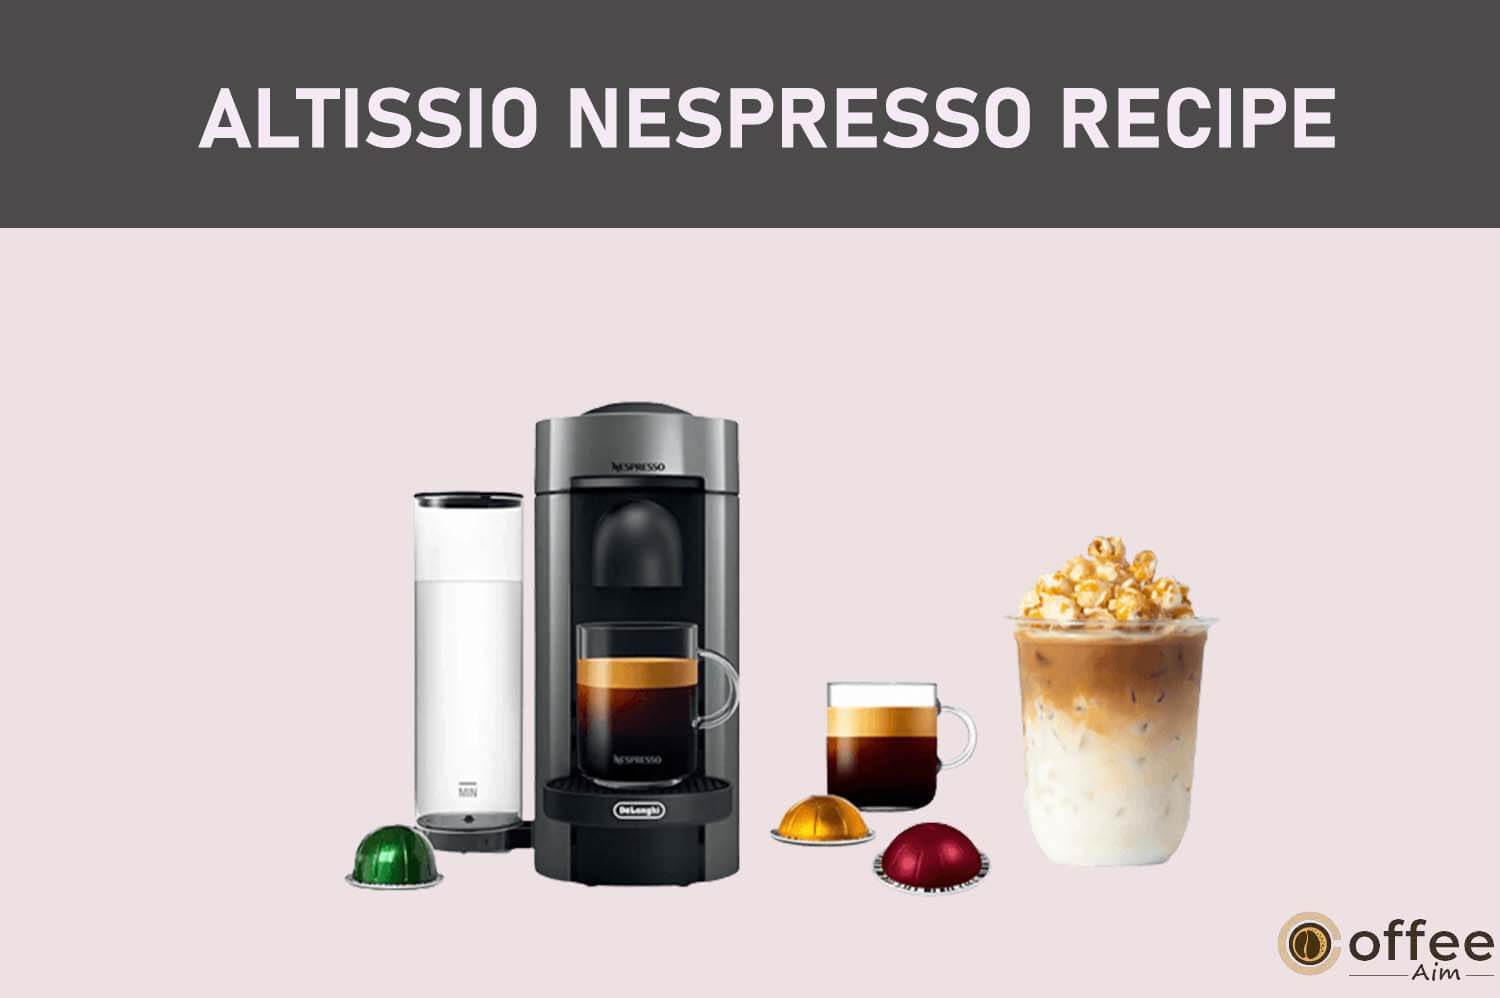 Featured image for the article "Altissio Nespresso Recipe"